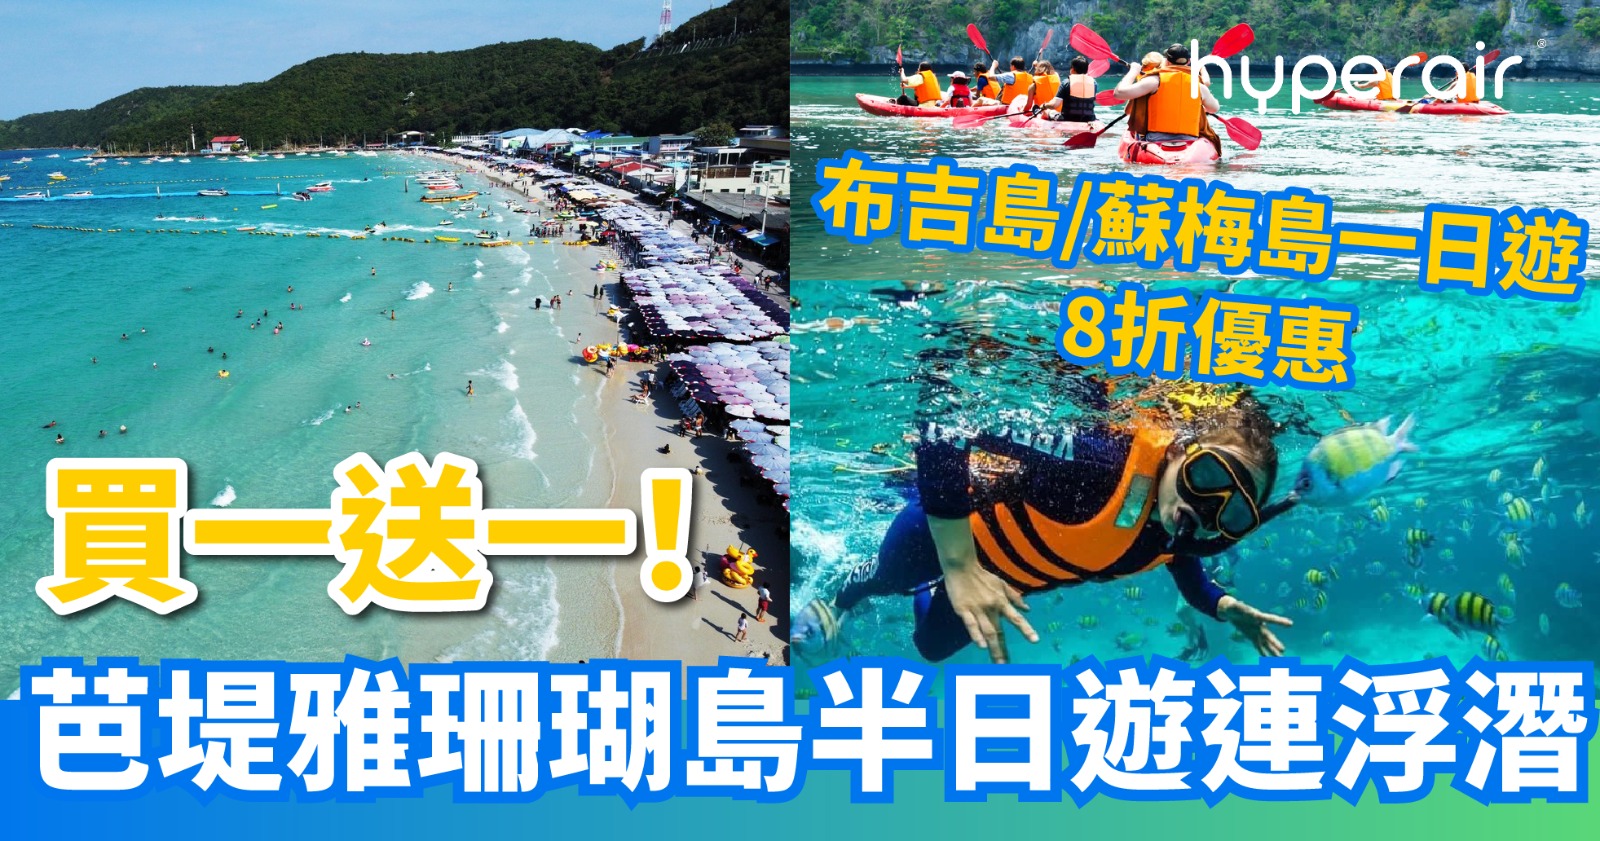 3月12日 3PM 開搶【買一送一】芭堤雅珊瑚島半日遊連浮潛 享受陽光與海灘及水上活動，低至 HK$94/位 另設泰國離島一日遊